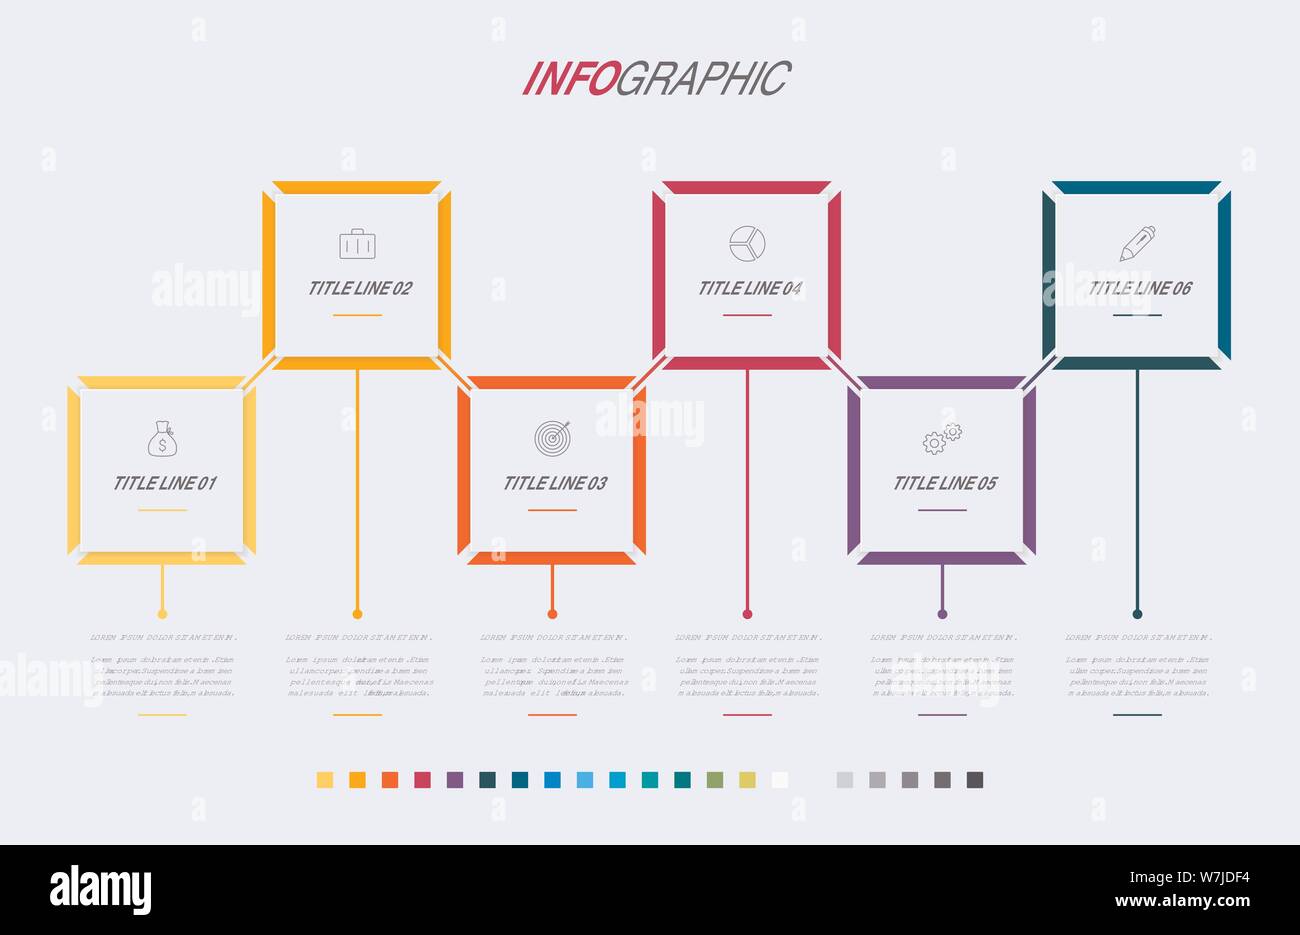 Modello infografico. 6 opzioni di design rettangolare con bellissimi colori. Vettore di elementi di sequenza temporale per le presentazioni. Illustrazione Vettoriale